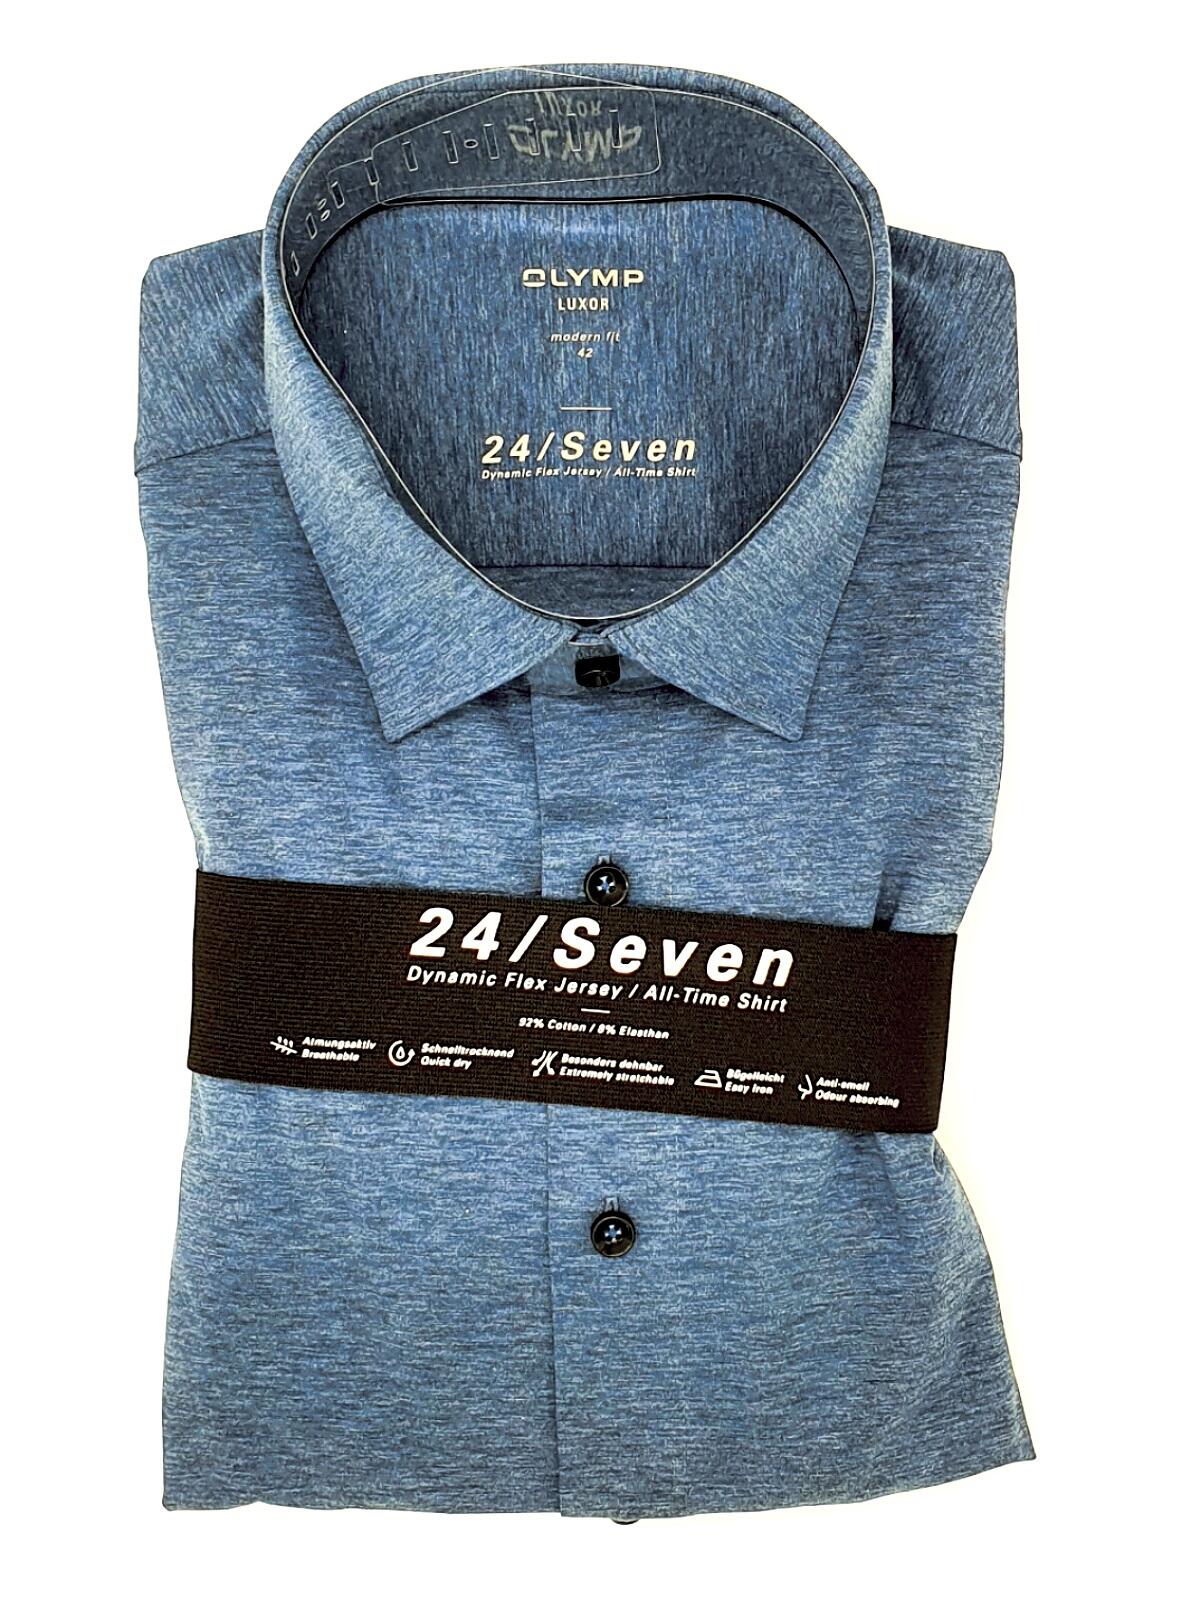 Olymp Olymp Hemd modern T-Shirt, Dynamic shoppen langarm fit erhältlich bei Gmunden ein bequem Jersey, 64 in 13 All-Time-Shirt | wie 24/Seven 1202 Schönleitner Mode Flex stilvoll jeans blau Gmunden